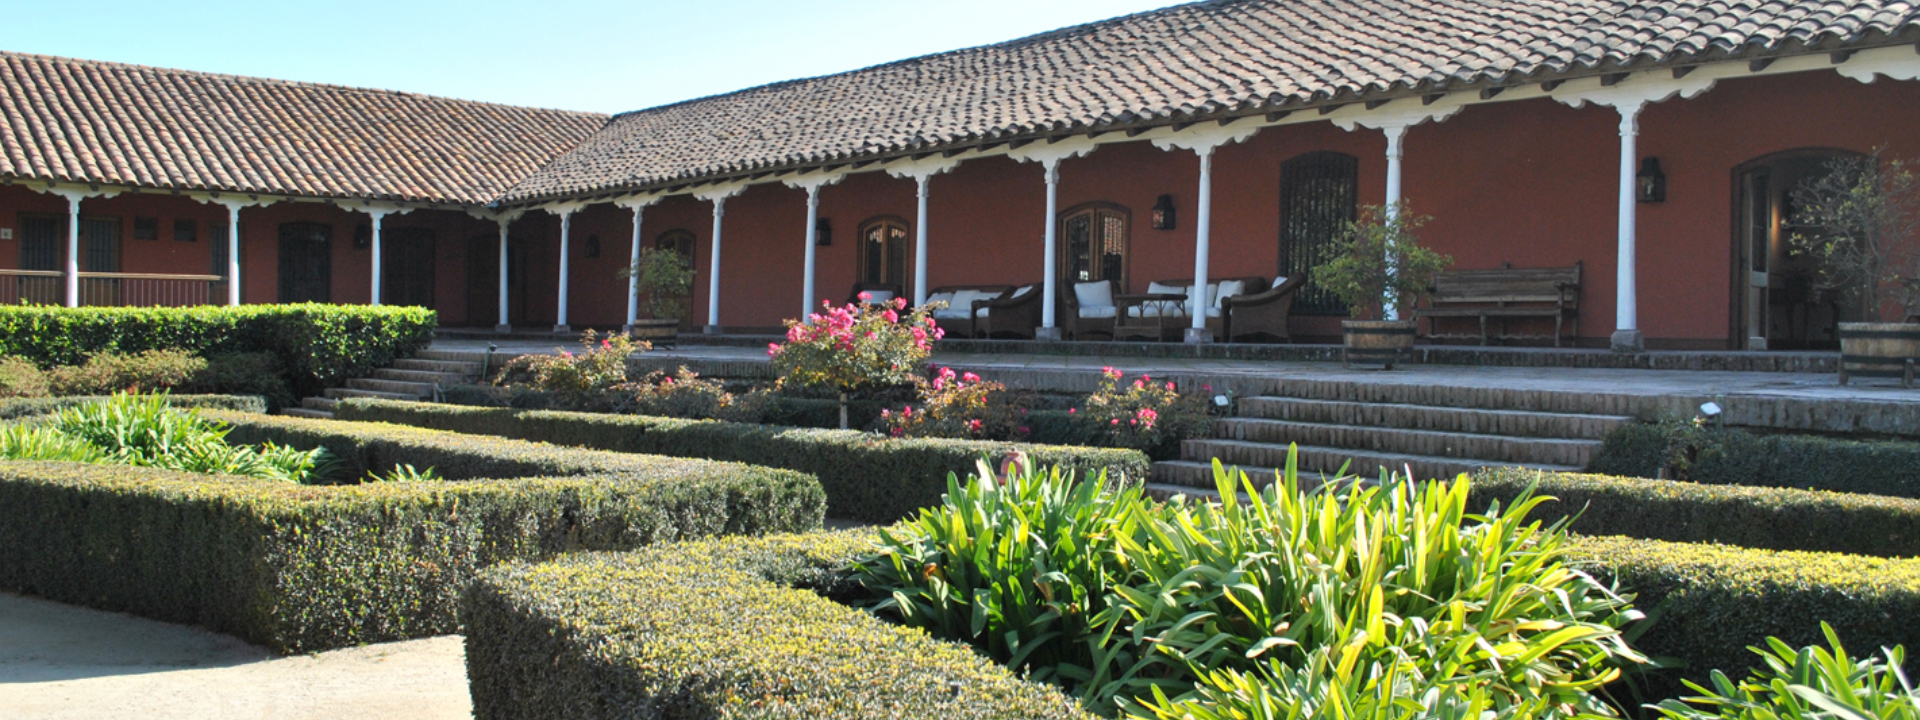 Santa Rita es elegida entre las mejores viñas del mundo para visitar